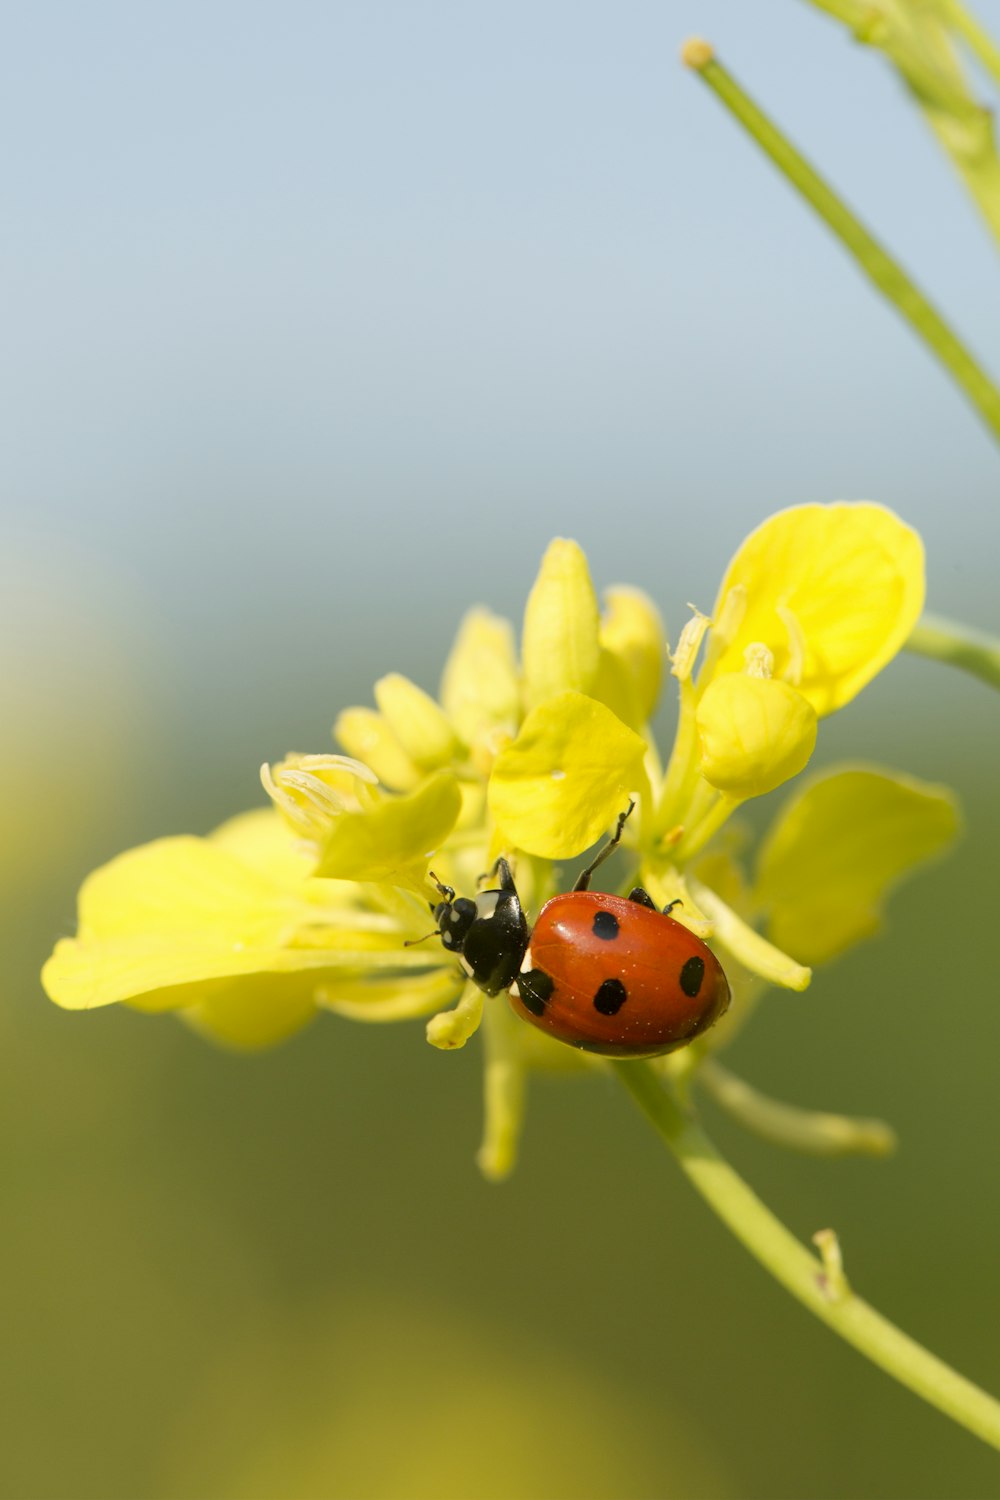 昼間の接写写真で黄色い花にとまる赤いてんとう虫